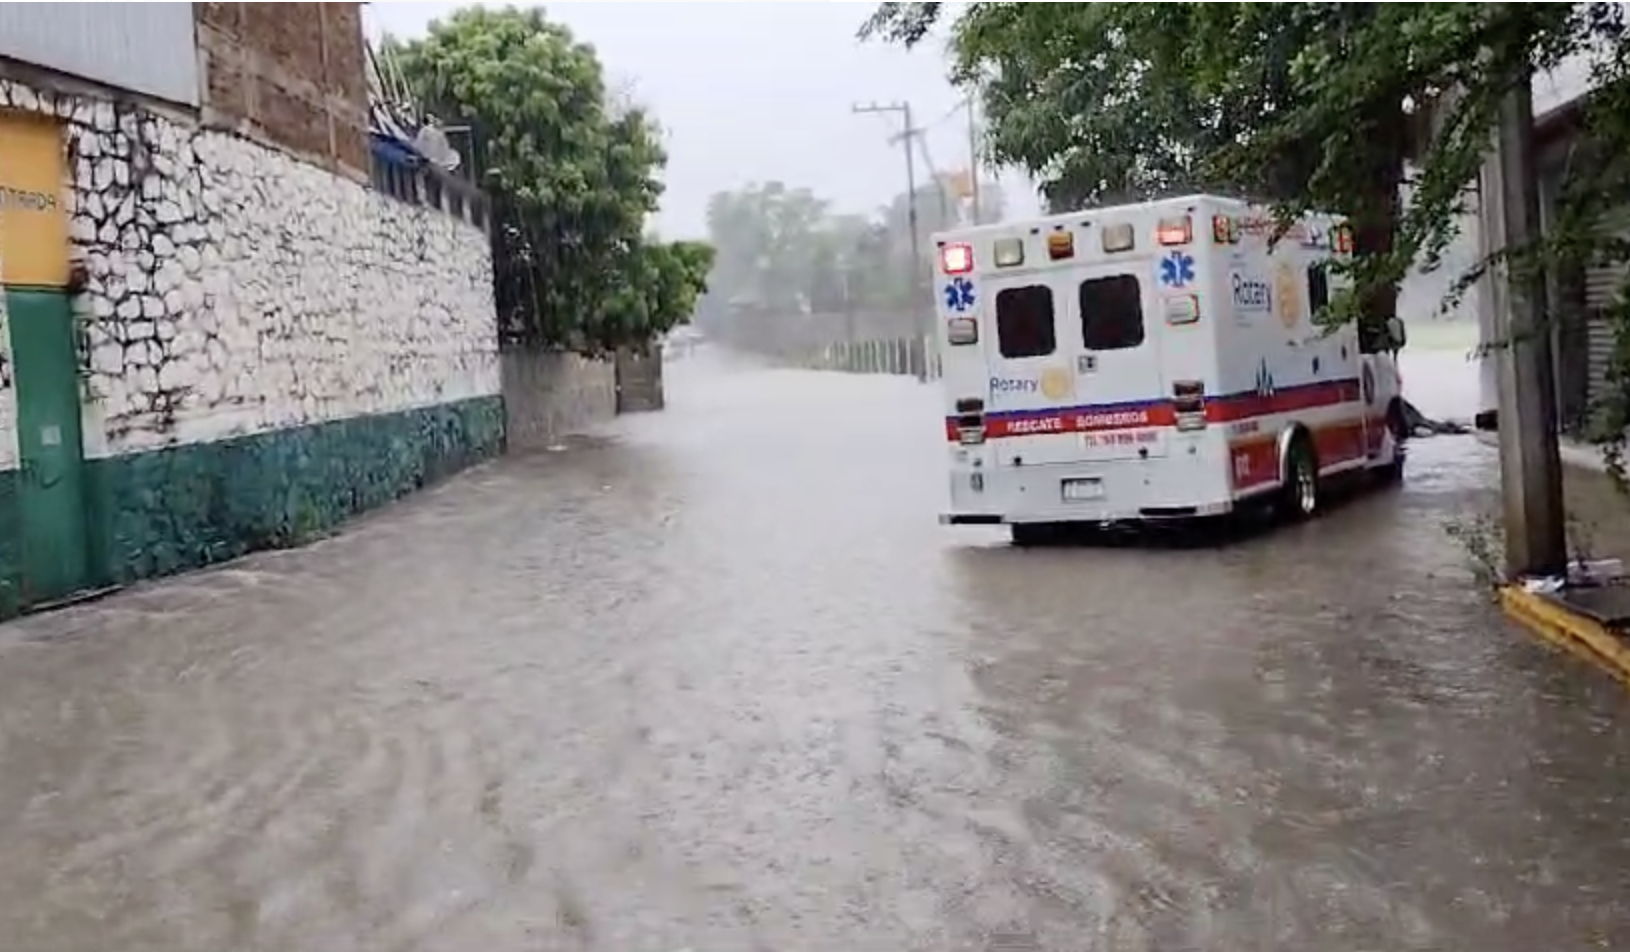 Mujer quedó atrapada en automóvil por calle inundada en Huejutla